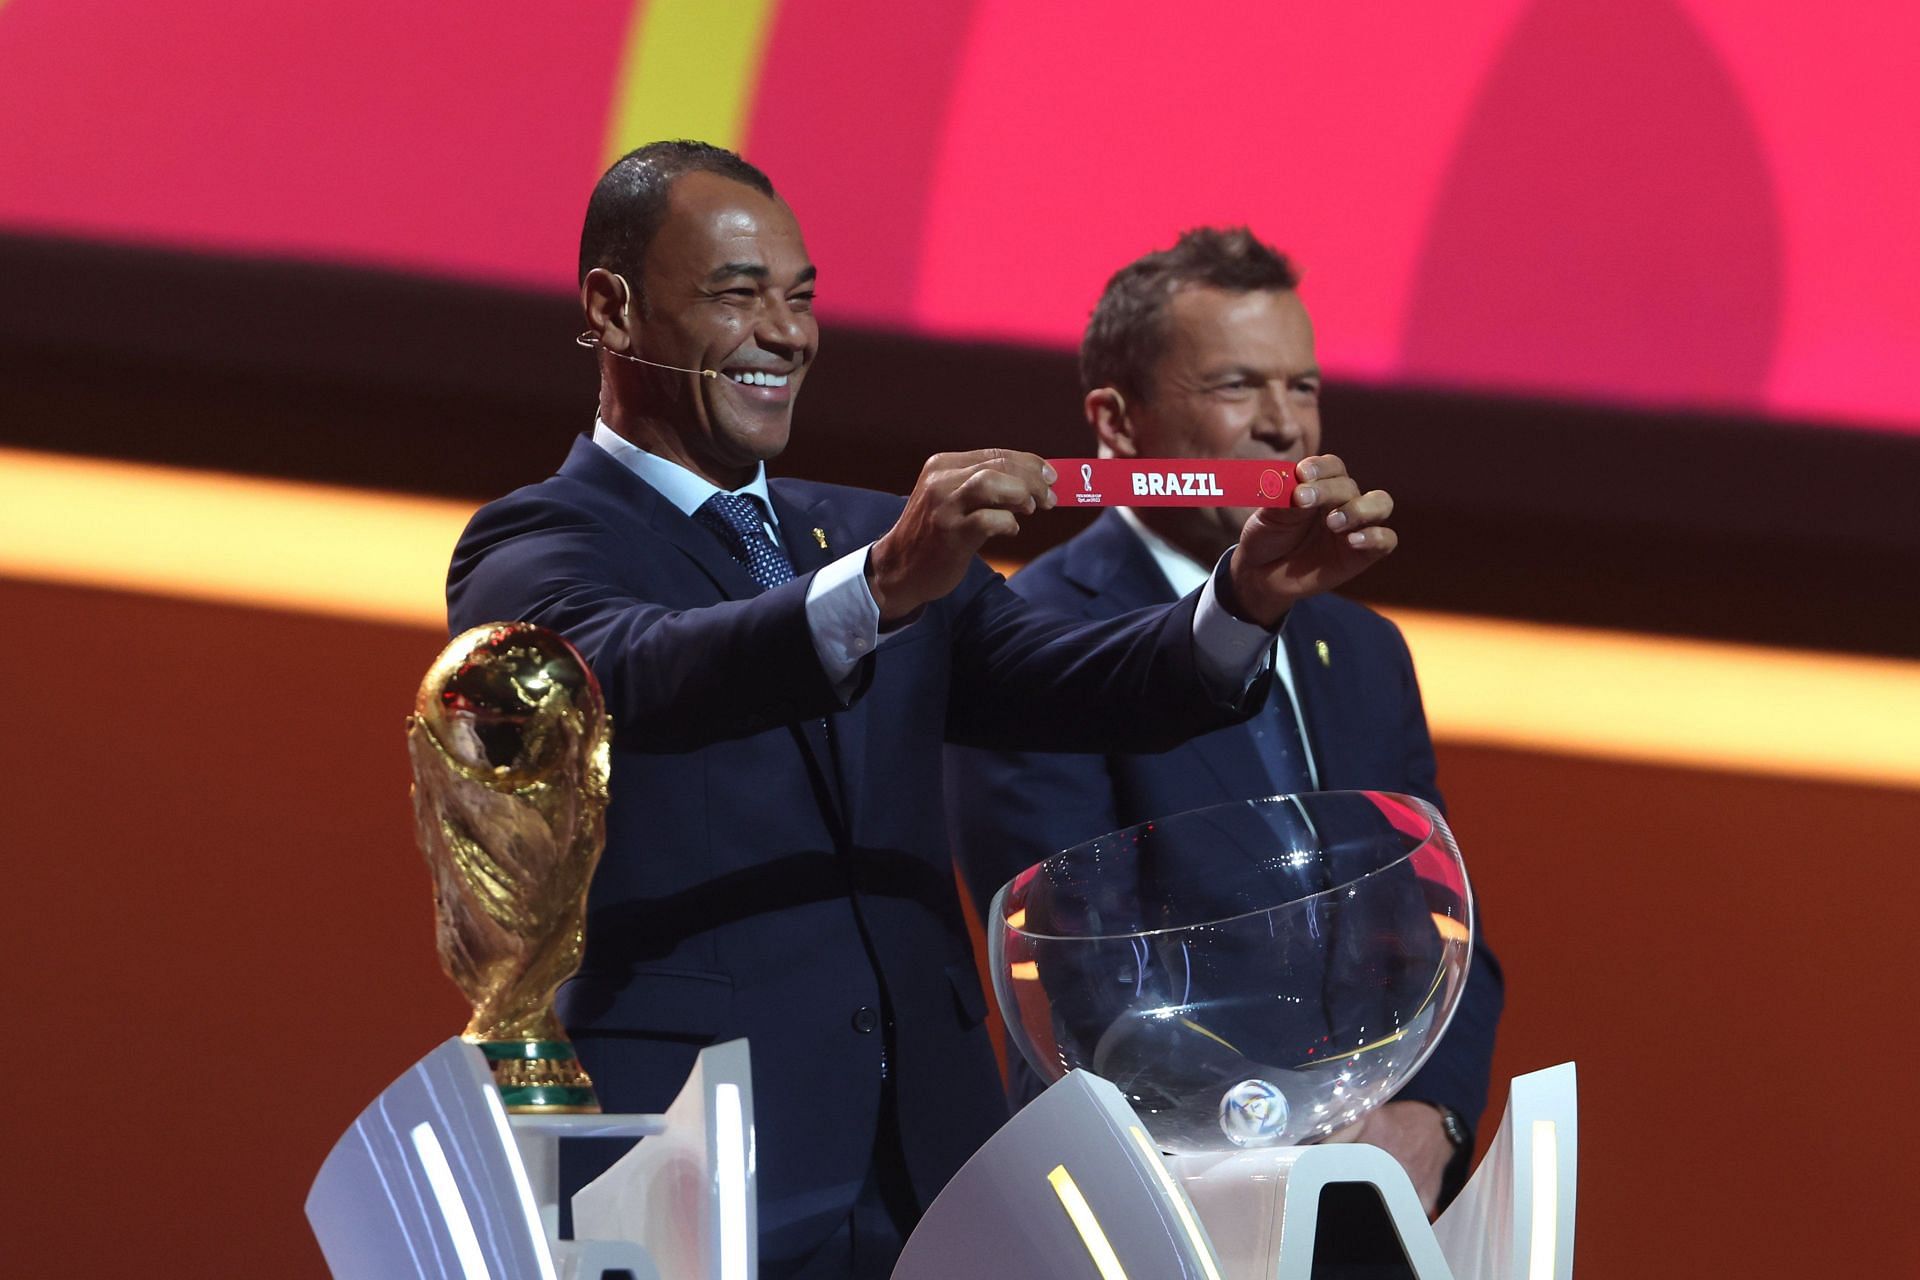 विश्व कप ड्रॉ में 5 बार की विजेता ब्राजील को ग्रुप G में रखा गया है।